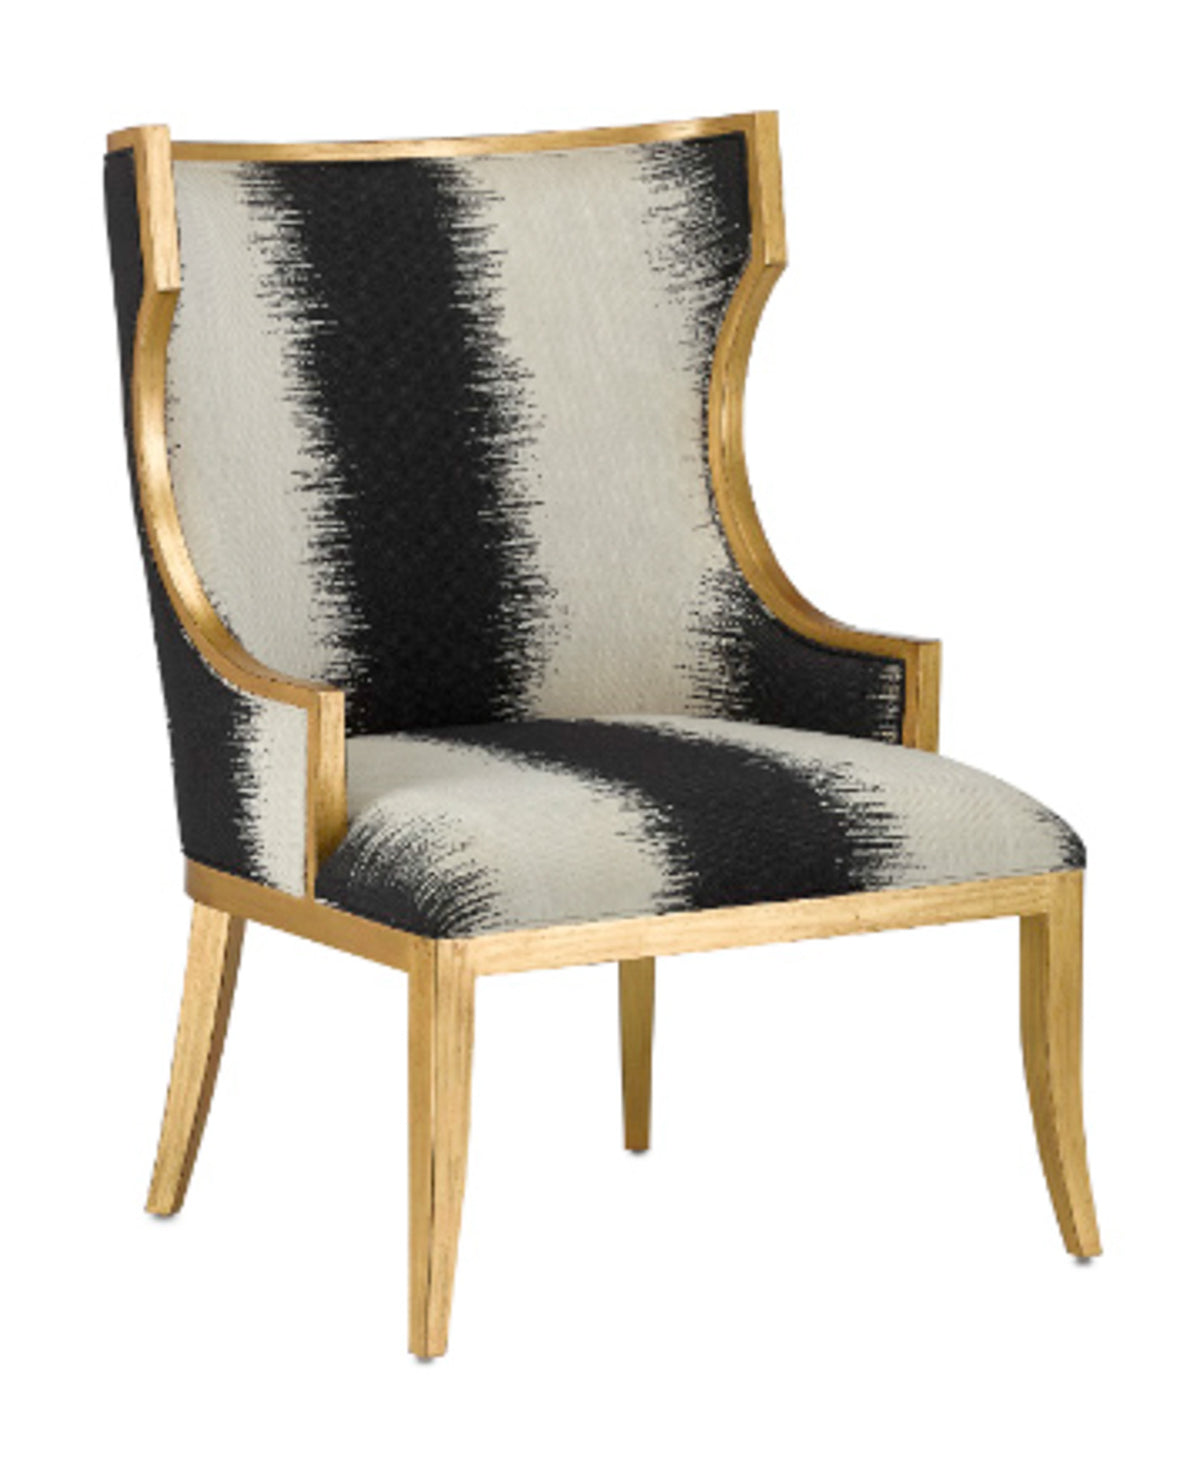 Black & White & Gold Kona Chair